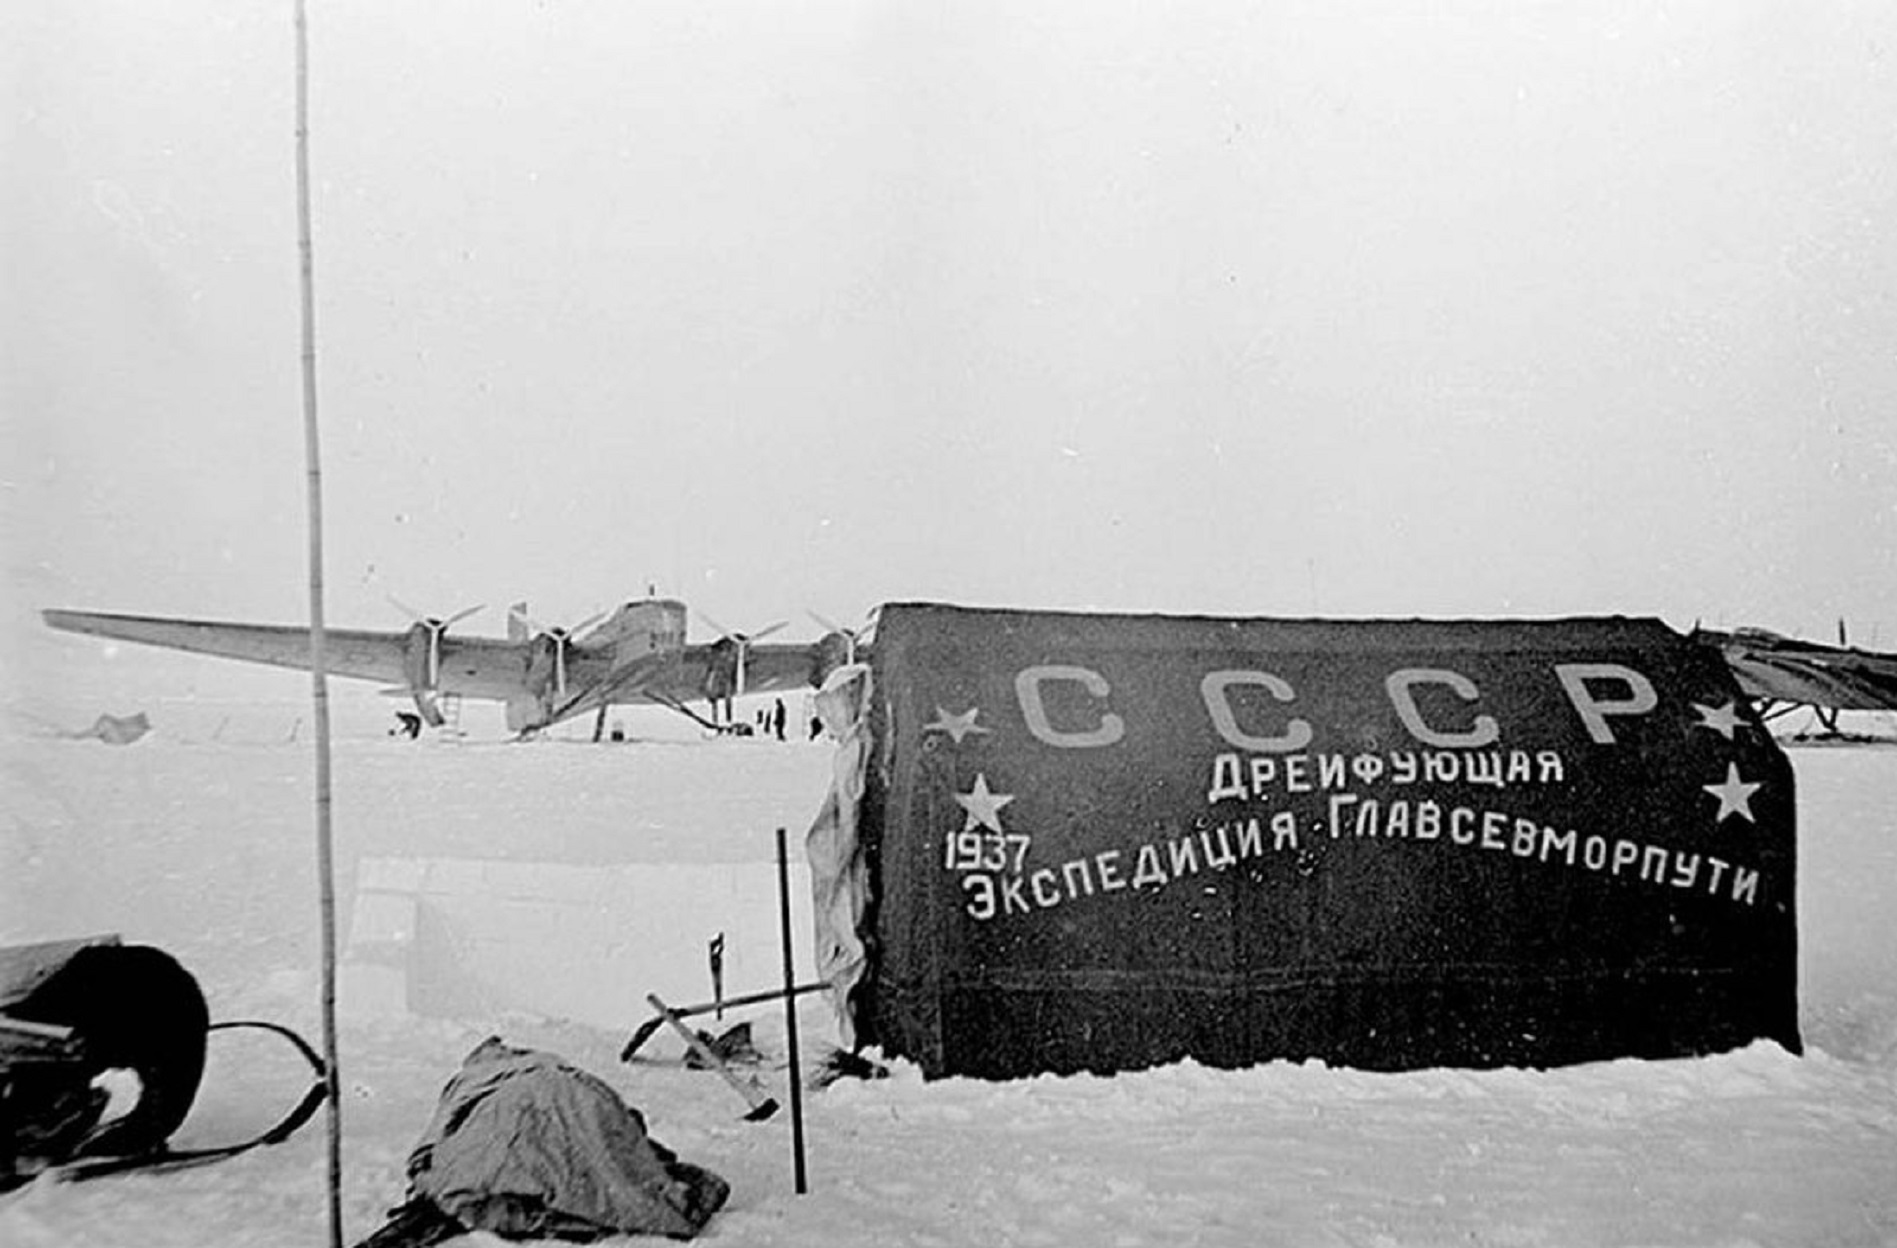 North pole 1. Дрейфующая Полярная станция Северный полюс 1. Первая в мире дрейфующая научная станция Северный полюс-1. Станция Северный полюс 1 Папанин. Экспедиция Папанина на Северный полюс 1937.